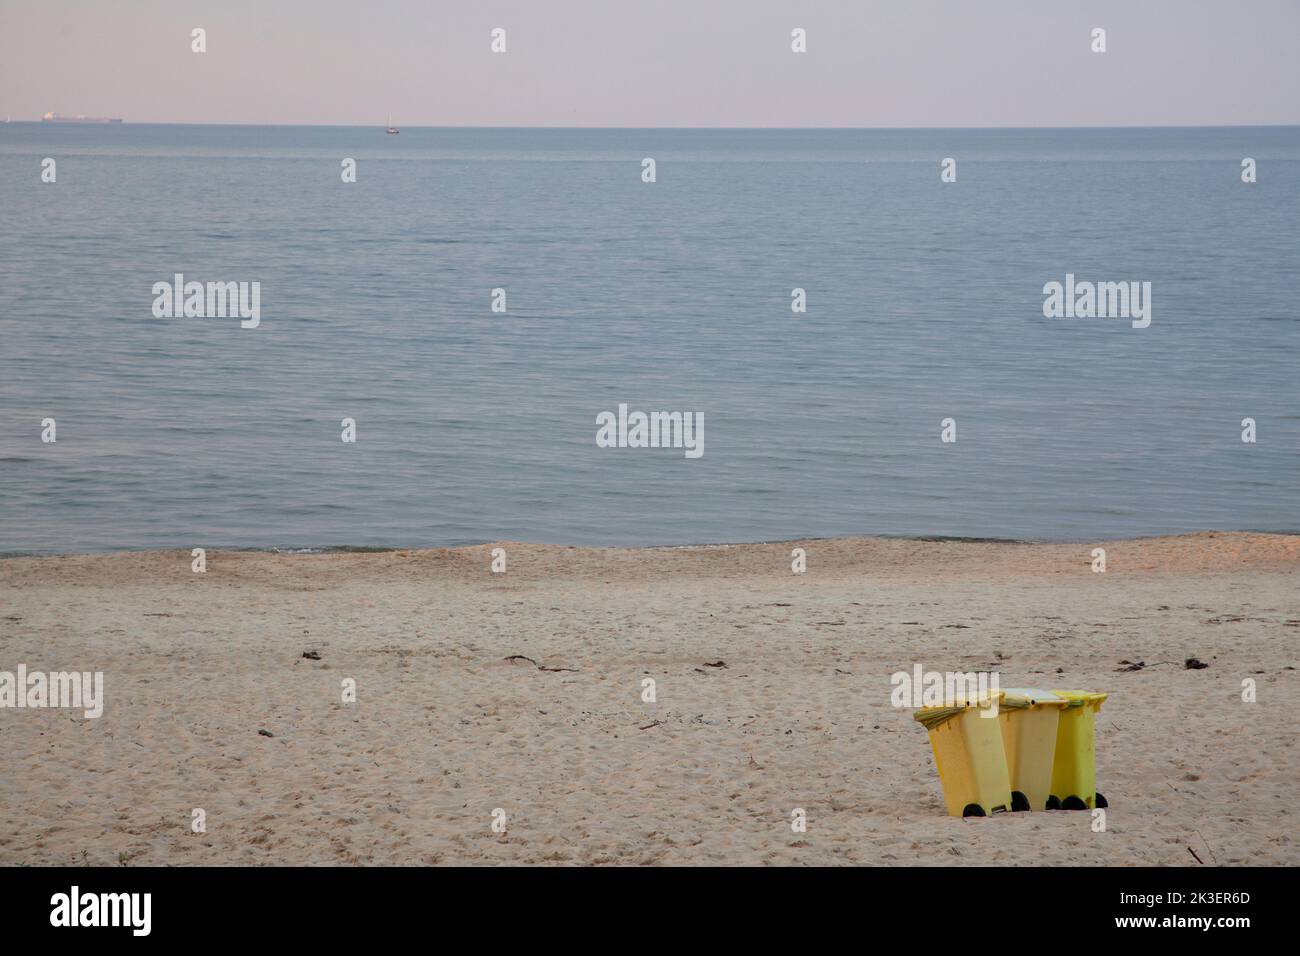 Plaża na Wyspa Sobieszewska, Morze Bałtyckie –  Beach on Gdańsk Sobieszewo island by the Baltic sea Stock Photo